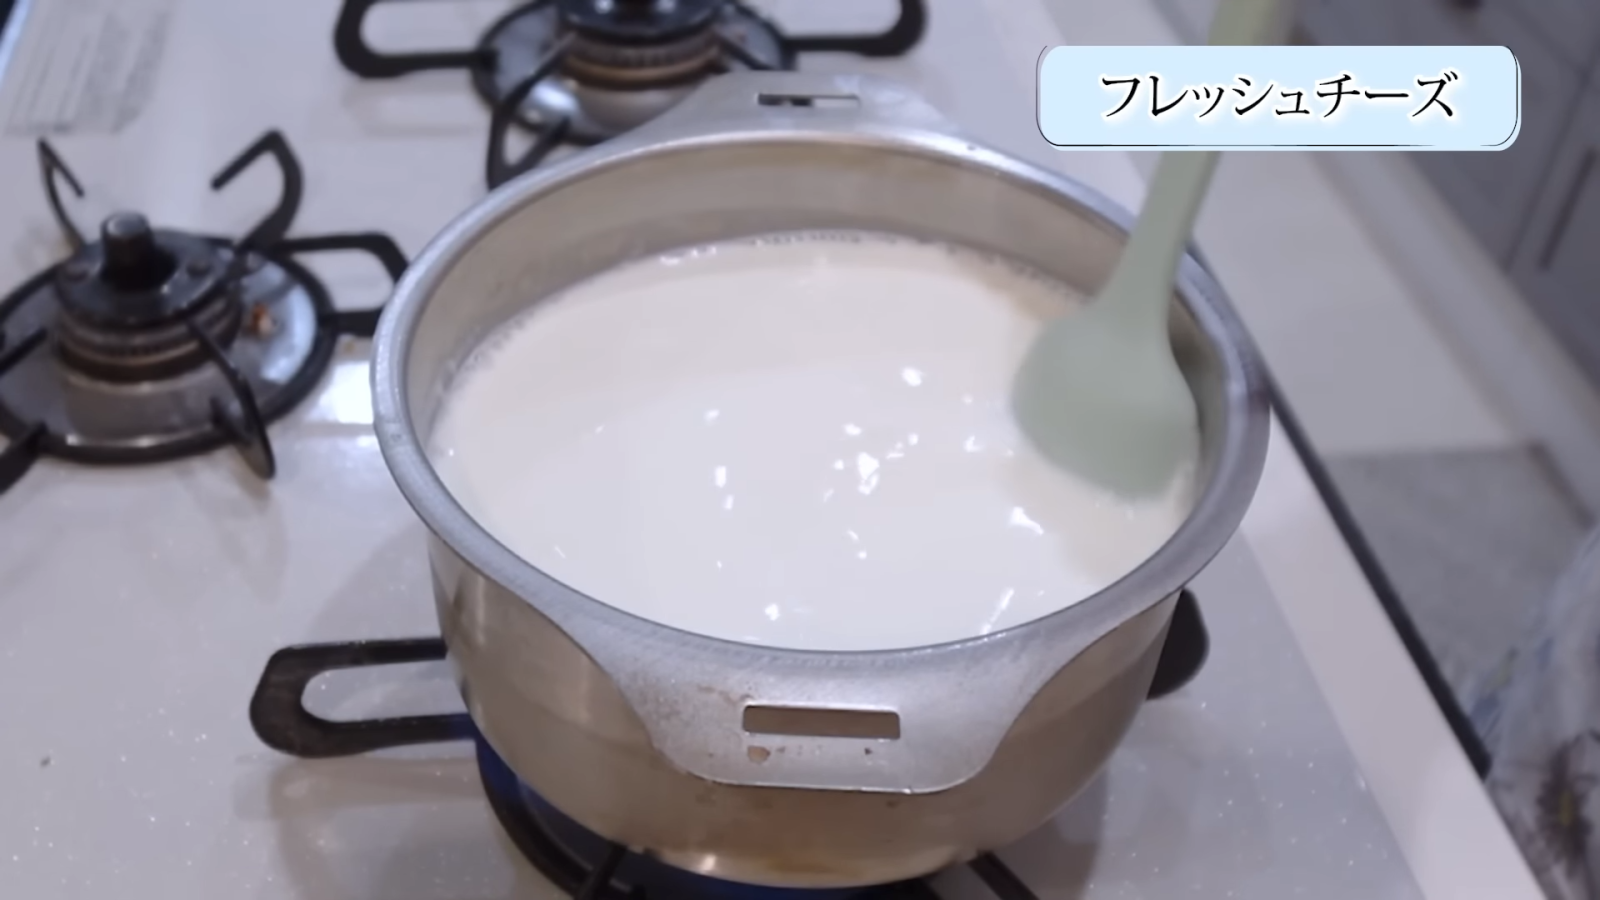 鍋で牛乳とプレーンヨーグルトを混ぜ合わせる女性